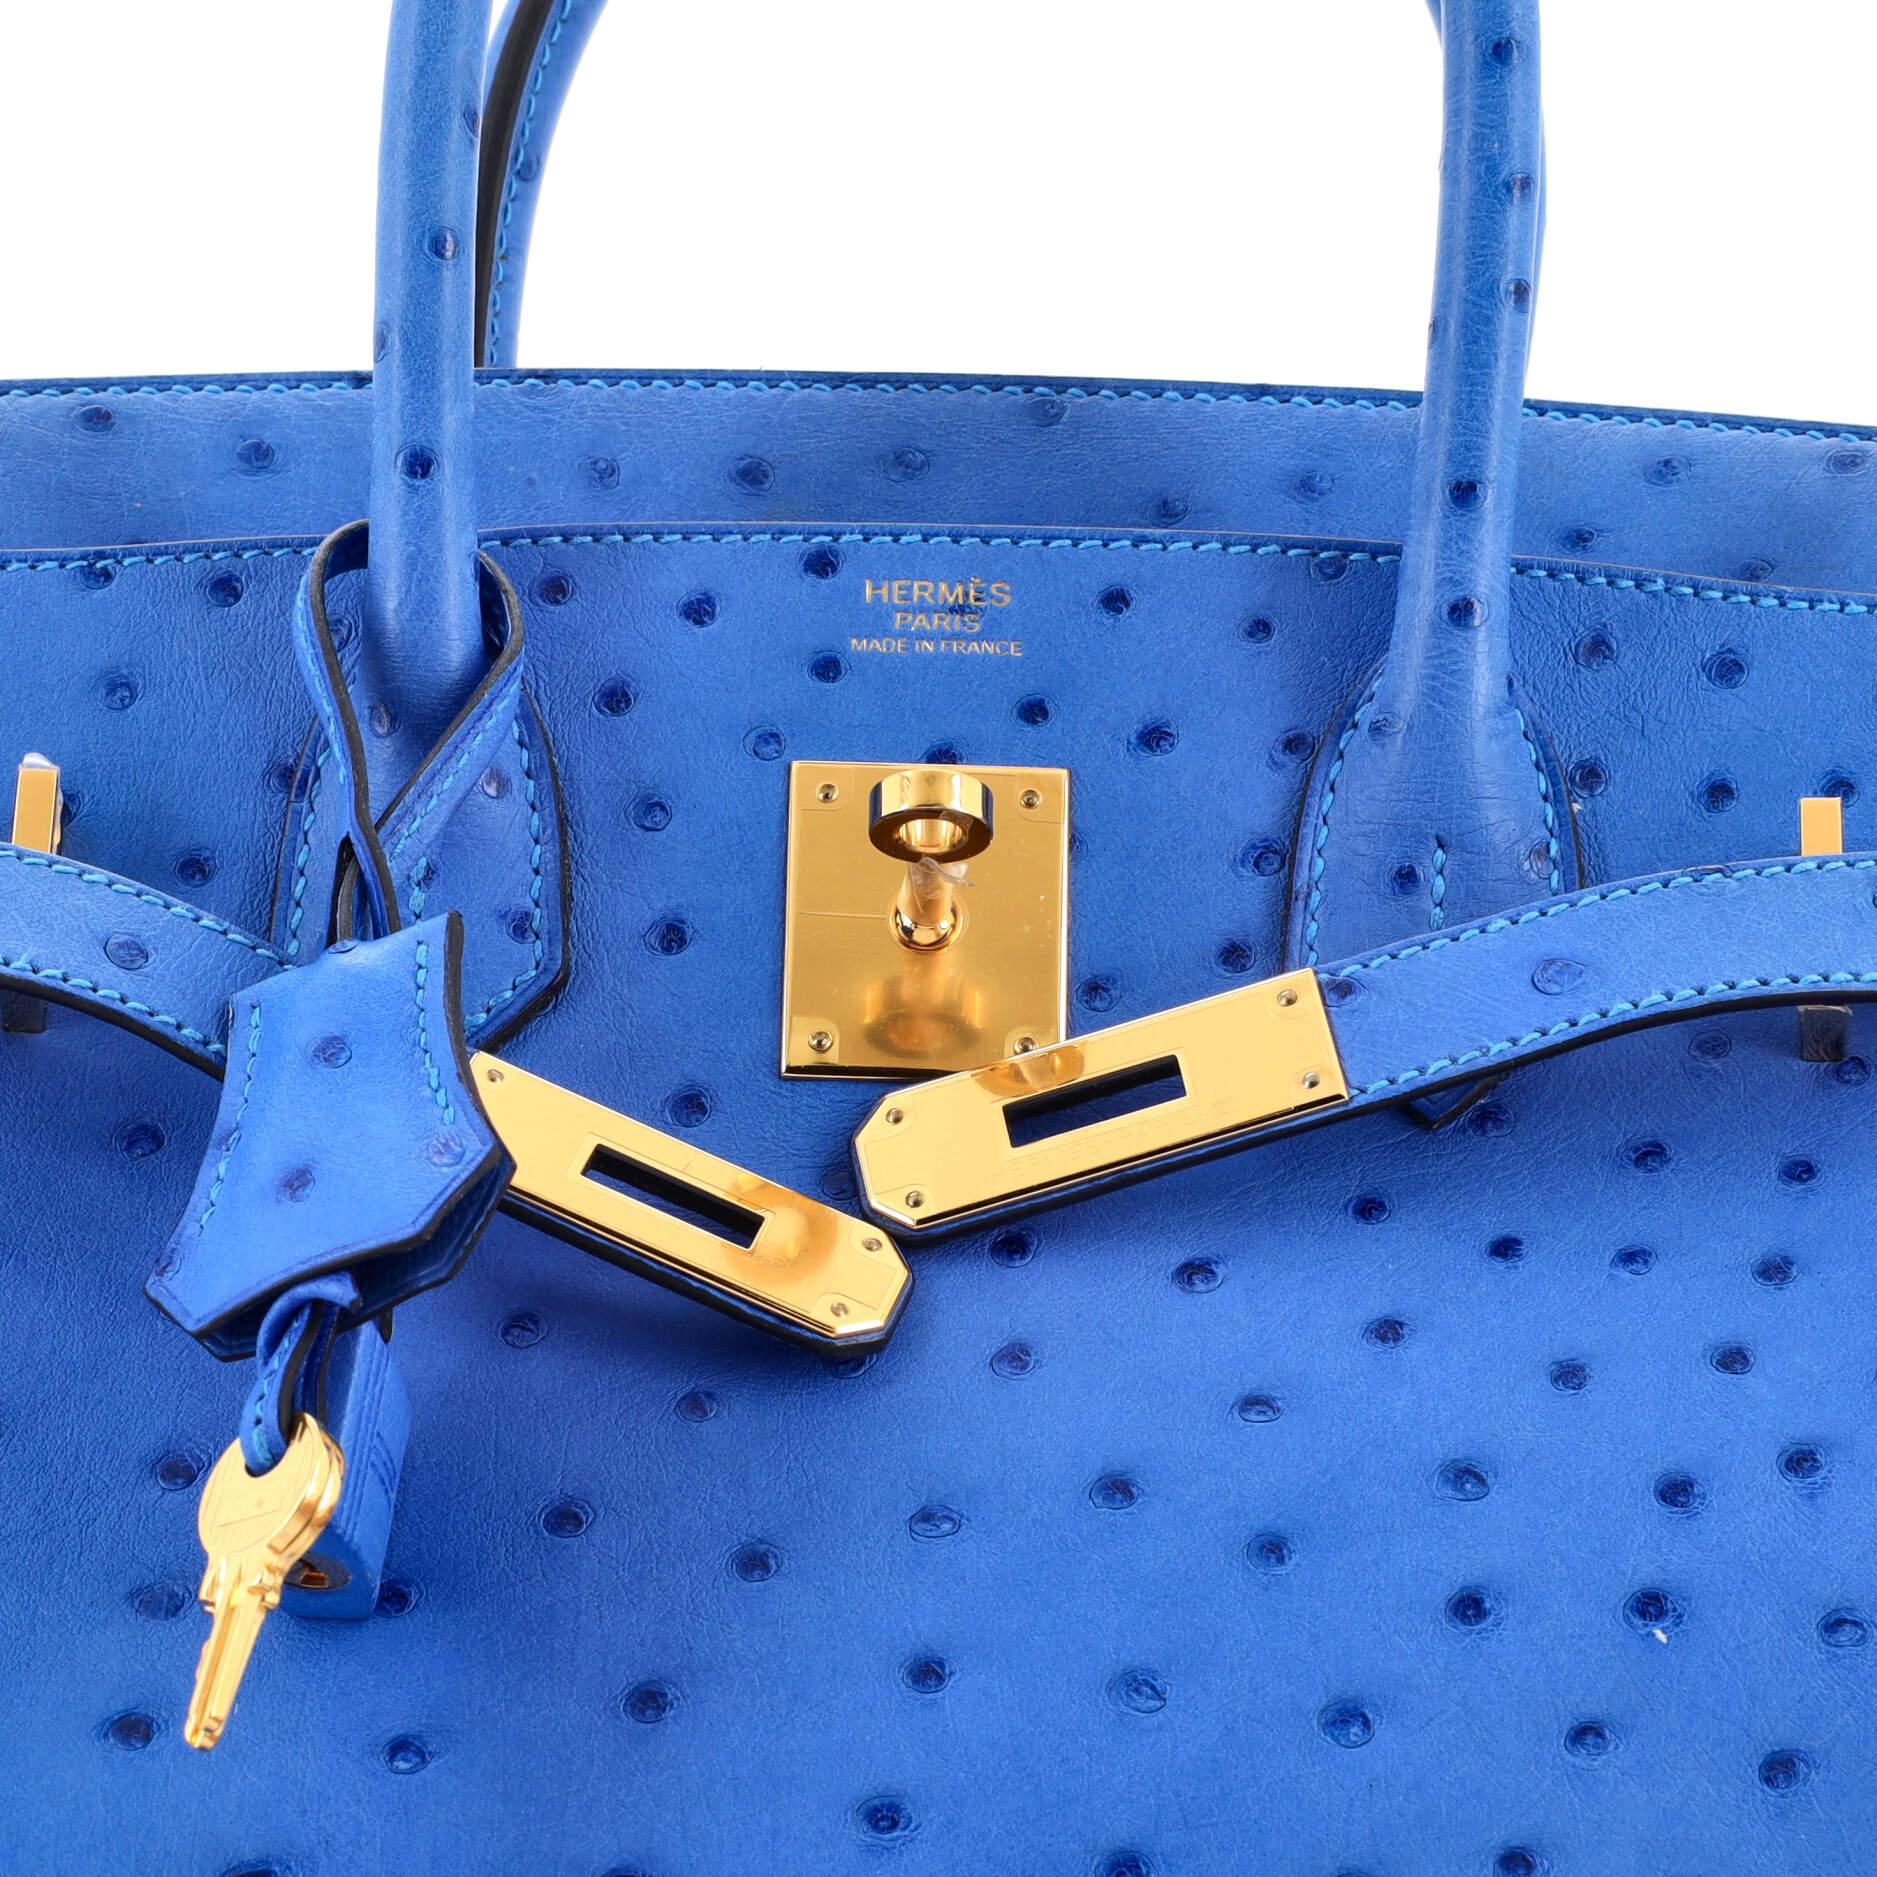 Women's Hermes Birkin Handbag Bleuet Ostrich with Gold Hardware 30